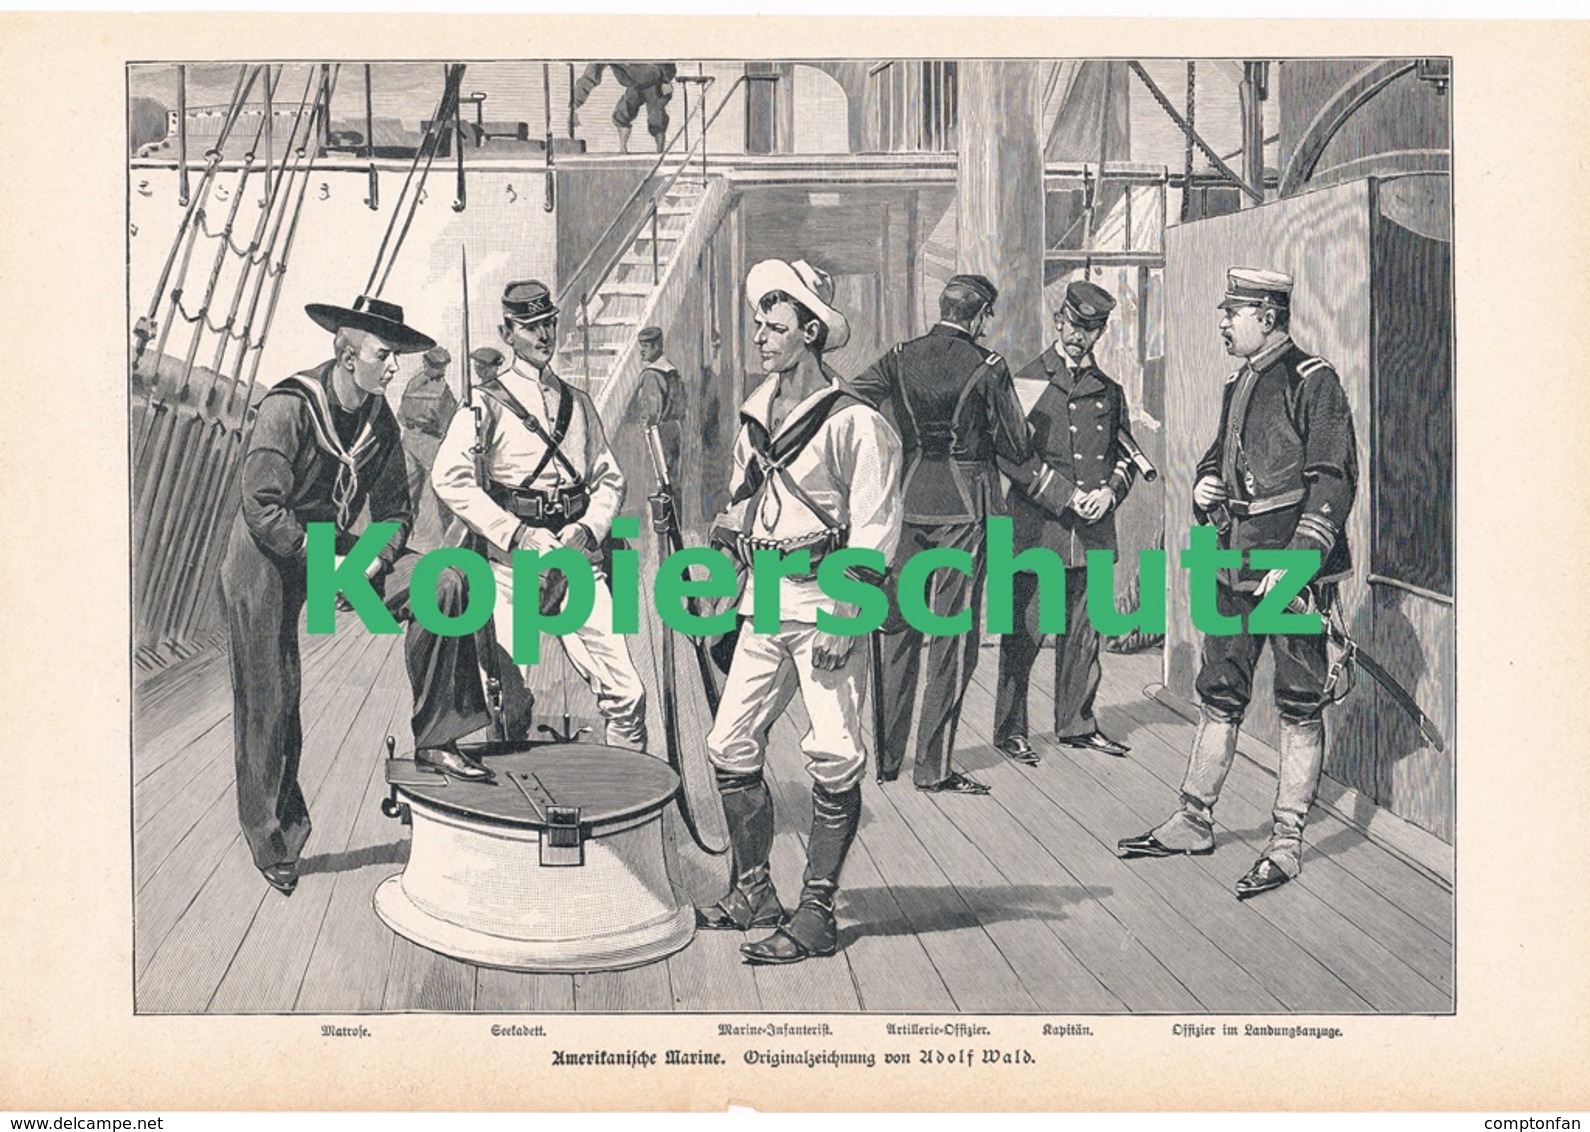 a102 197 Heer und Flotten Spanien und USA 1 Artikel mit 4 Bildern von 1897 !!